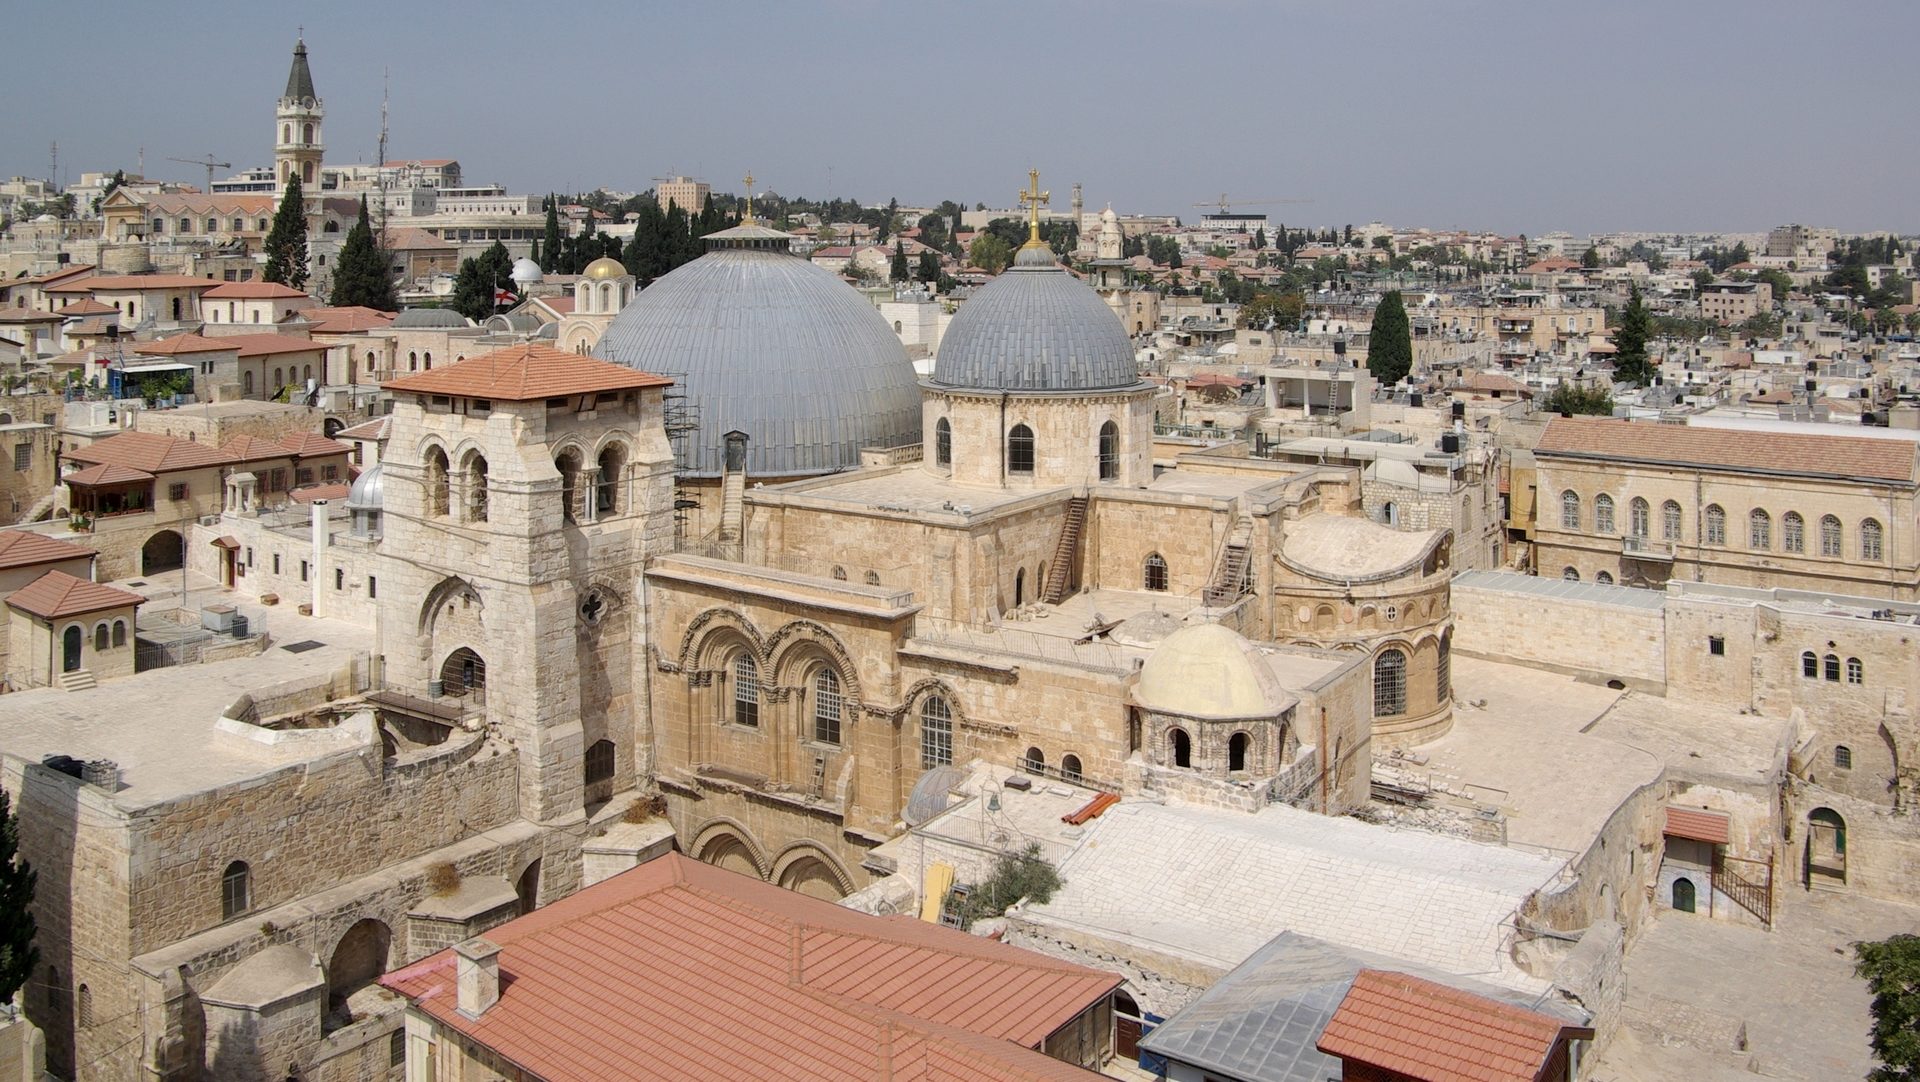 En février 2018, en signe de protestation, les Eglises avaient fermé la basilique du Saint-Sépulcre de Jérusalem  Photo:  wikimedia commons Berthold Werner CC BY-SA 3.0